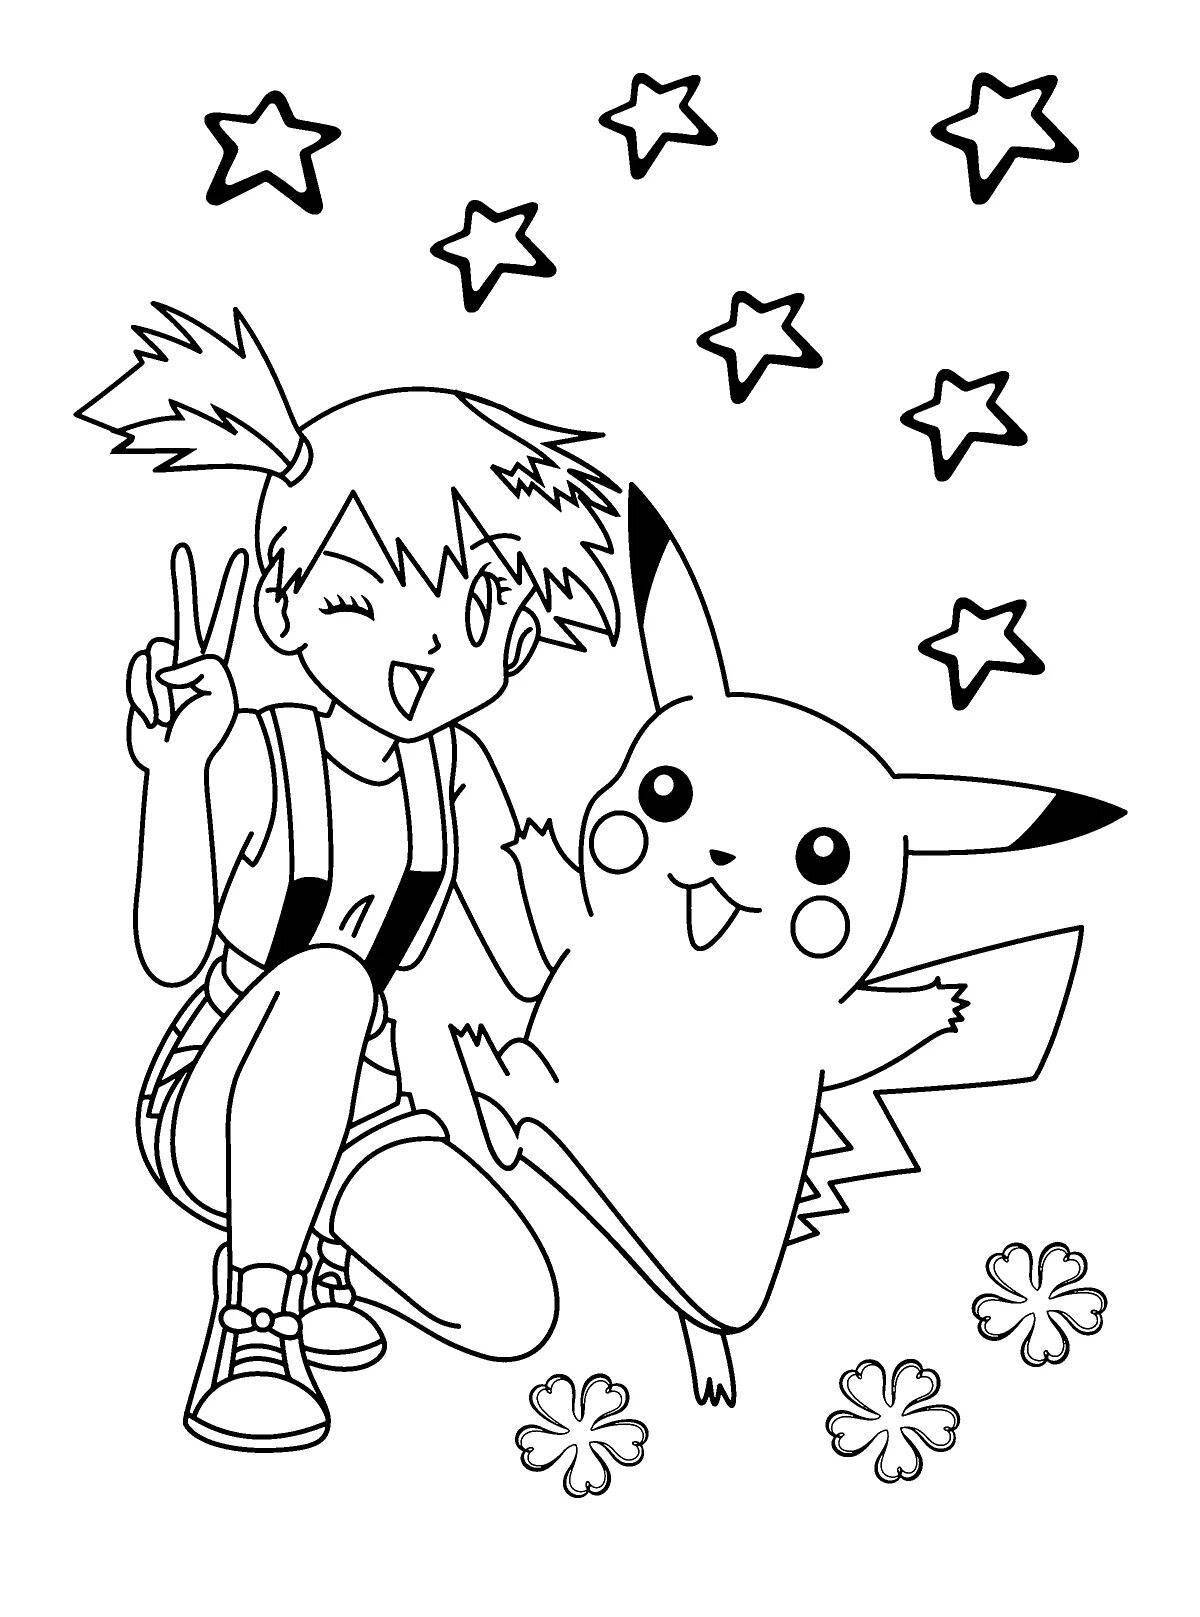 Anime pikachu fun coloring book